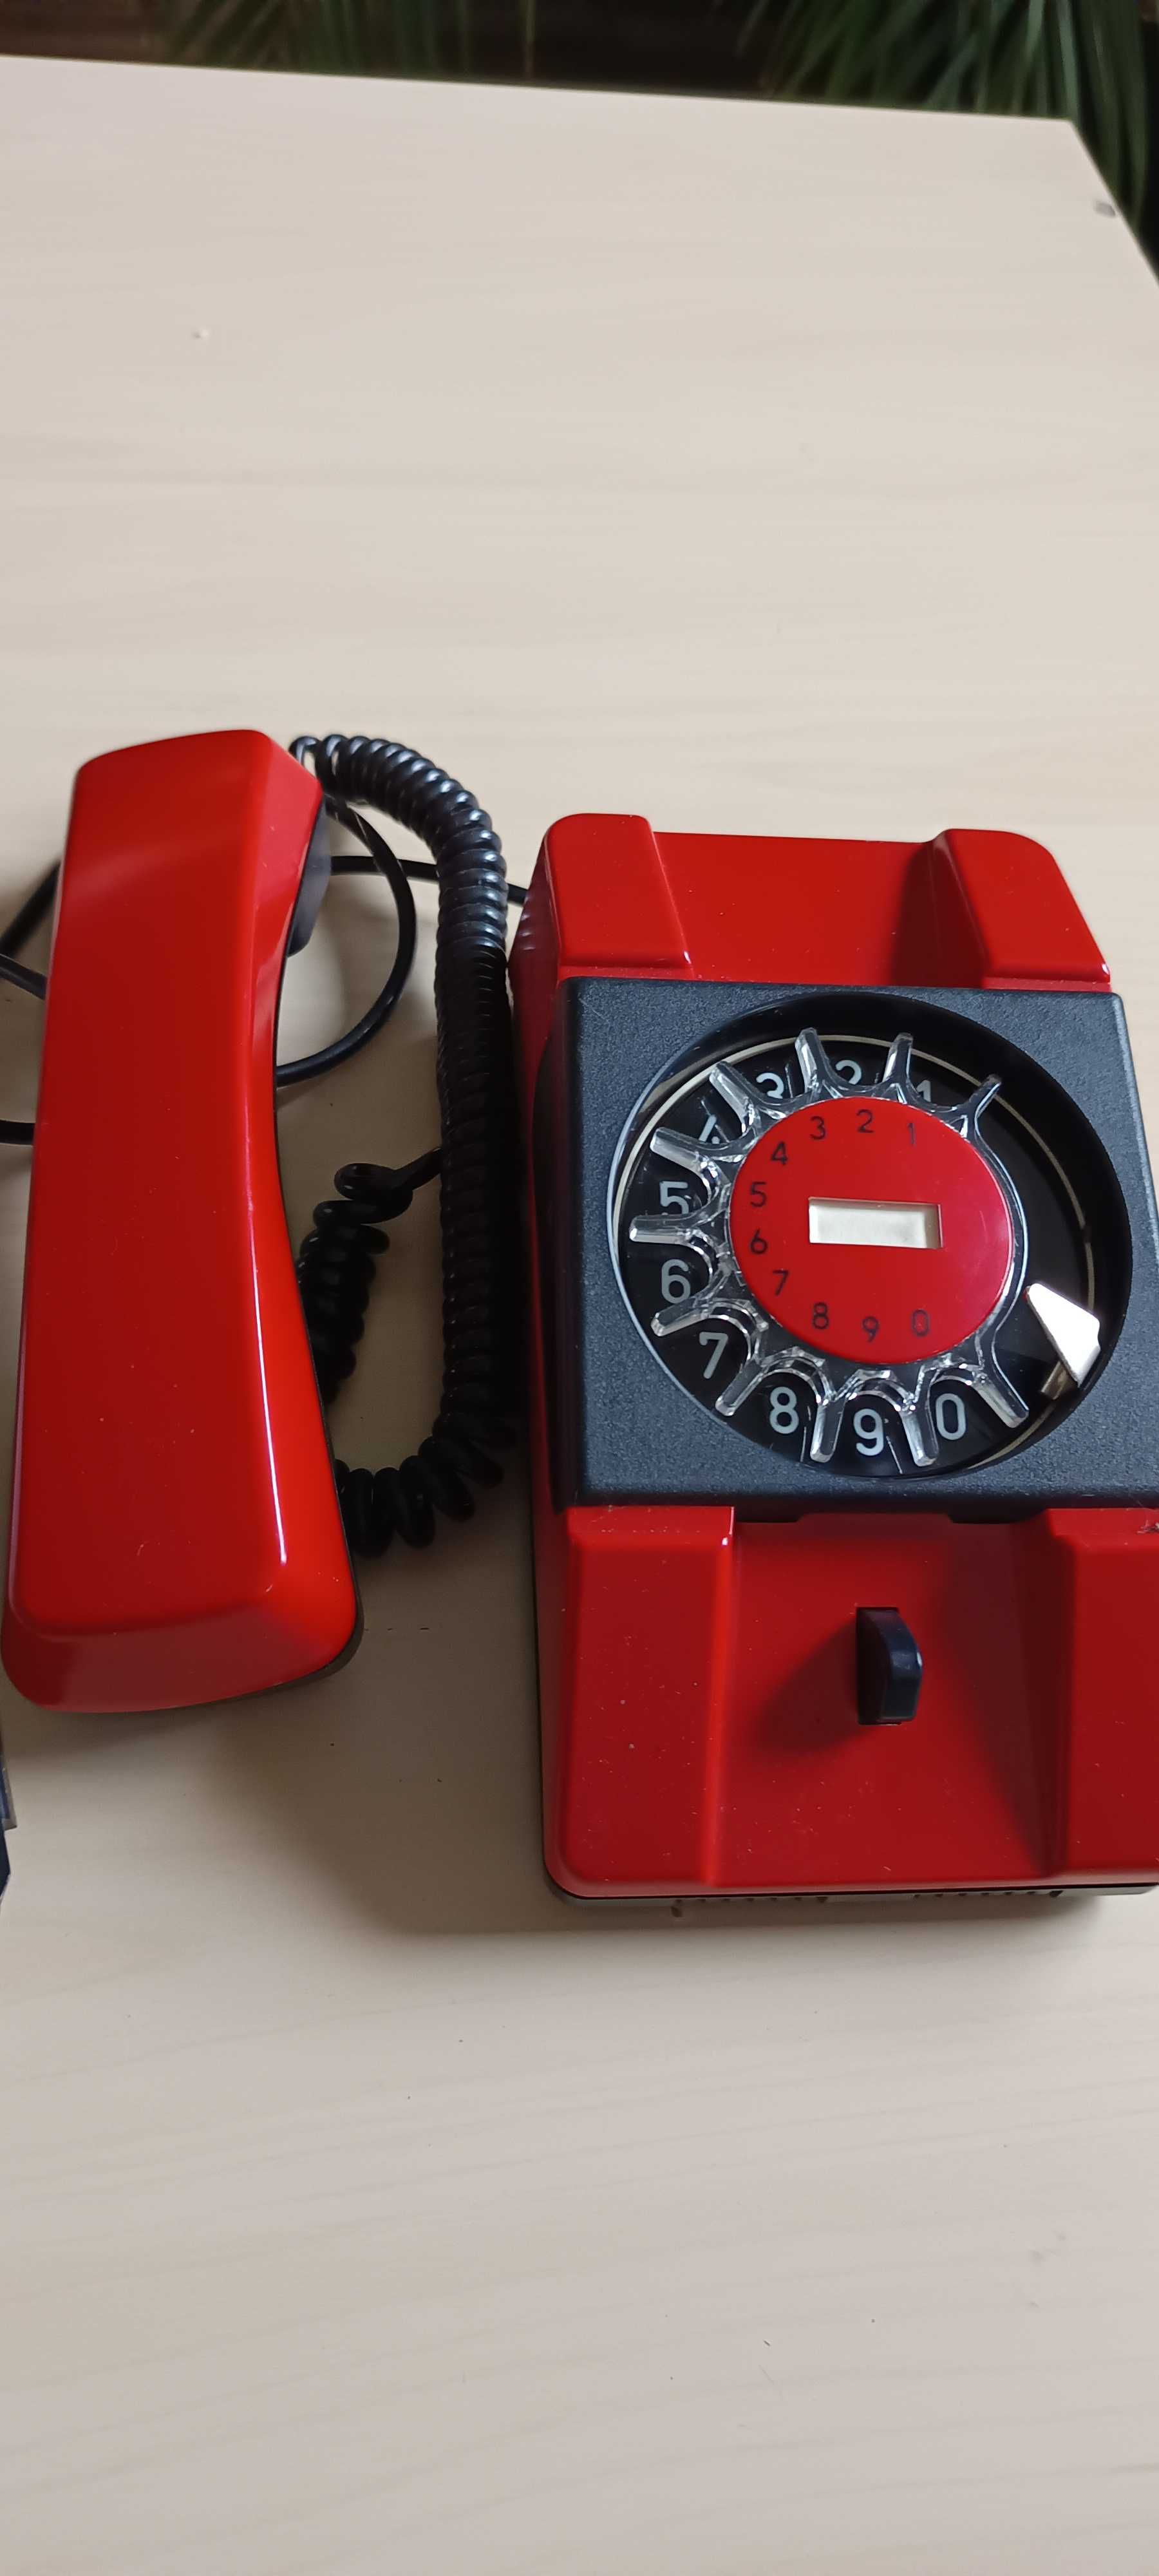 Telefon analogowy czerwony